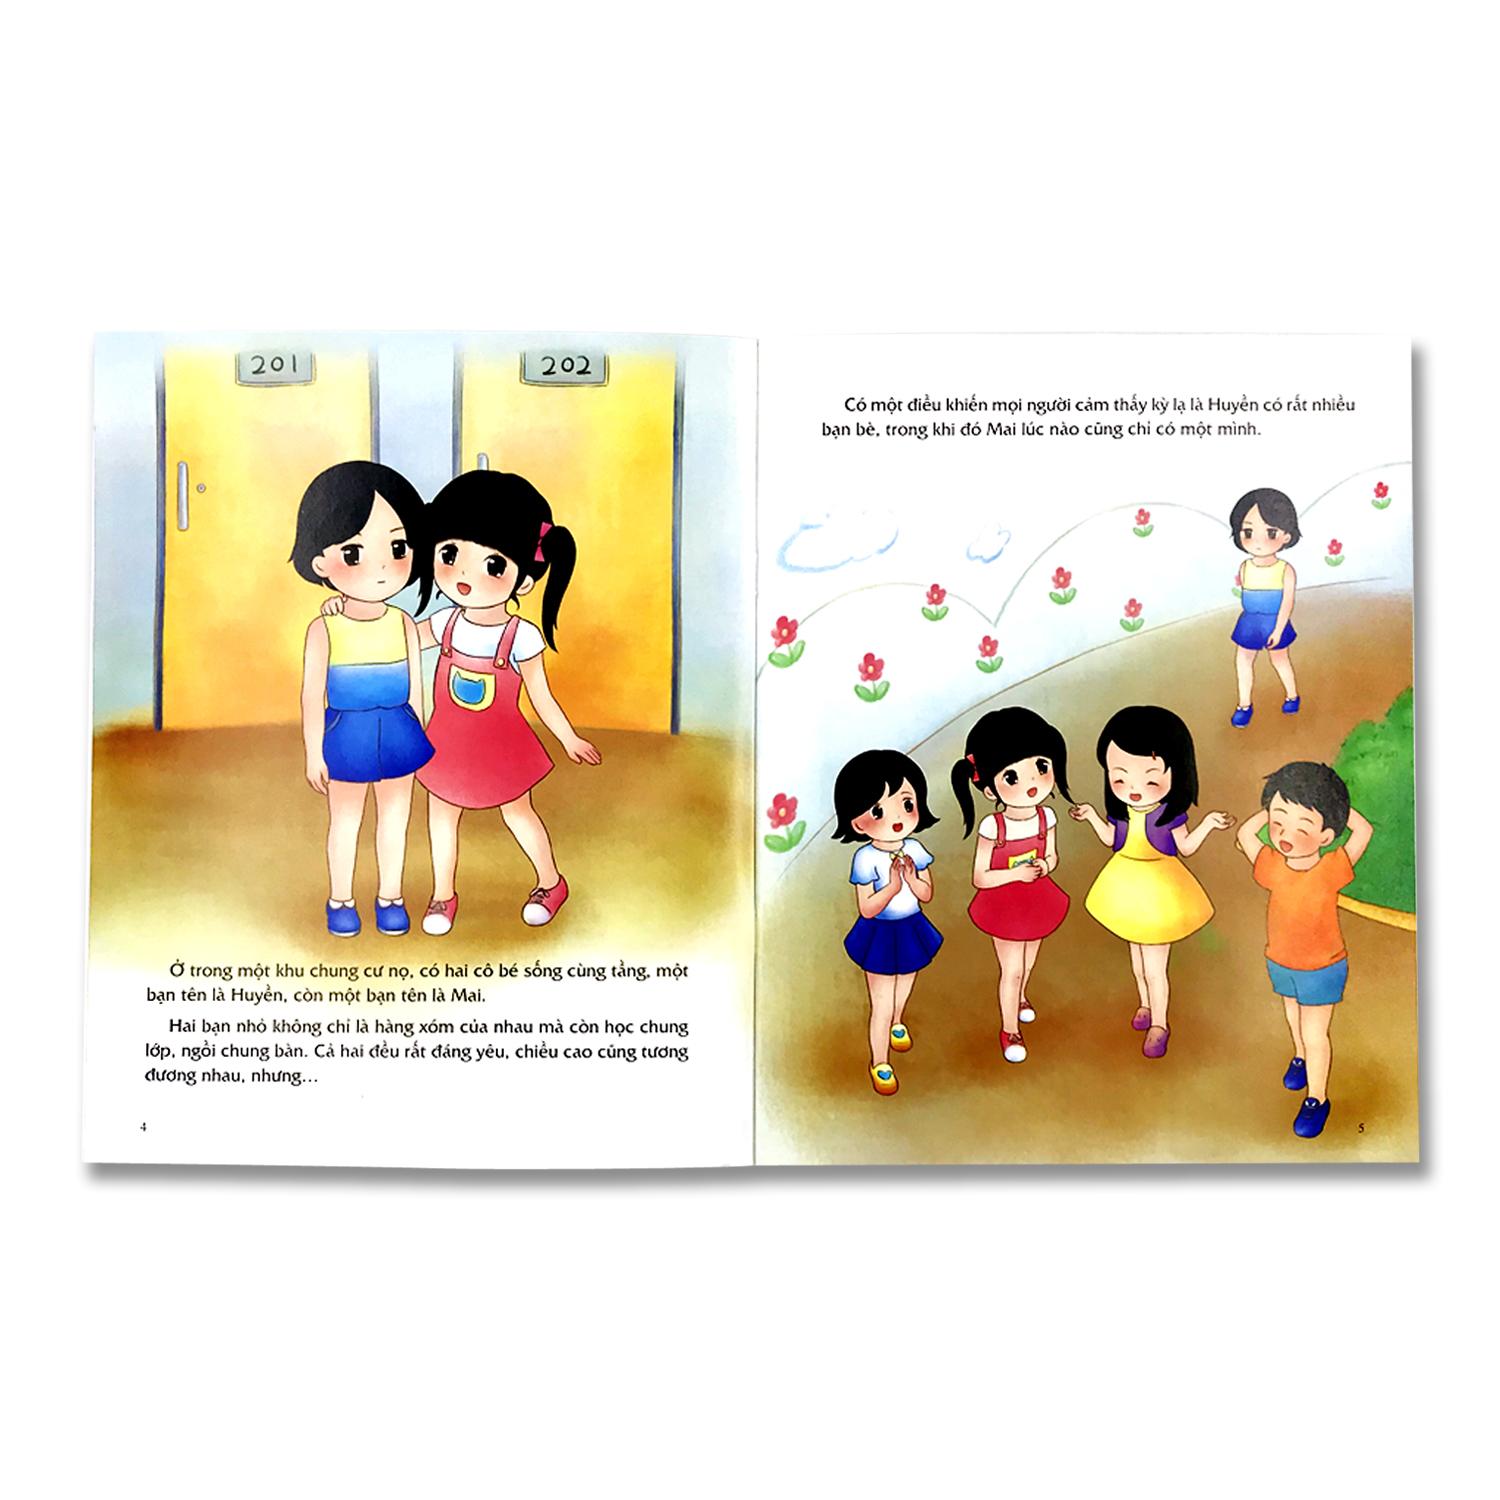 Sách - Giáo dục giới tính và nhân cách dành cho bé gái (Bộ 4 quyển, lẻ tùy chọn) - Mọi điều bé gái cần phải biết - Dành cho trẻ em từ 5-12 tuổi